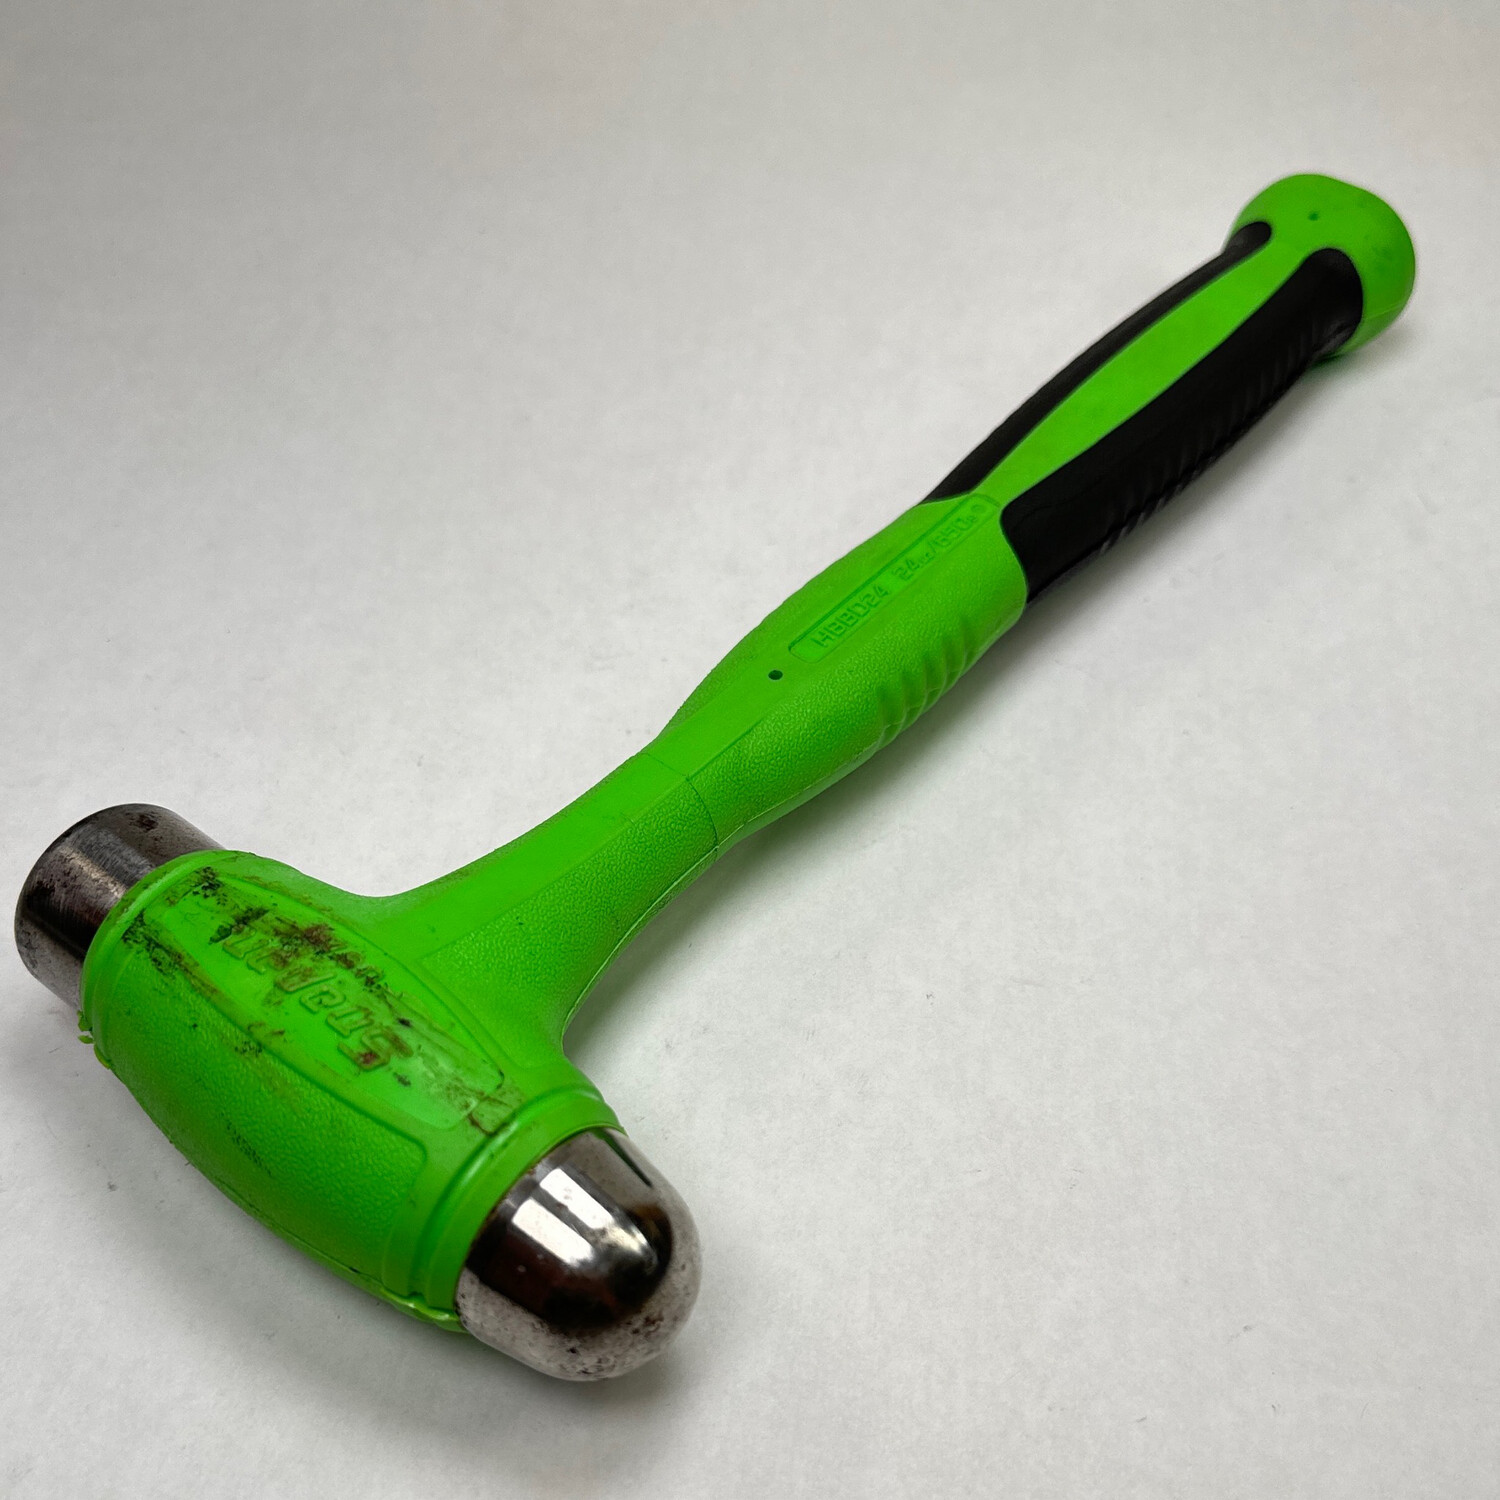 Snap On 24 oz Ball Peen Soft Grip Dead Blow Hammer (Green), HBBD24G